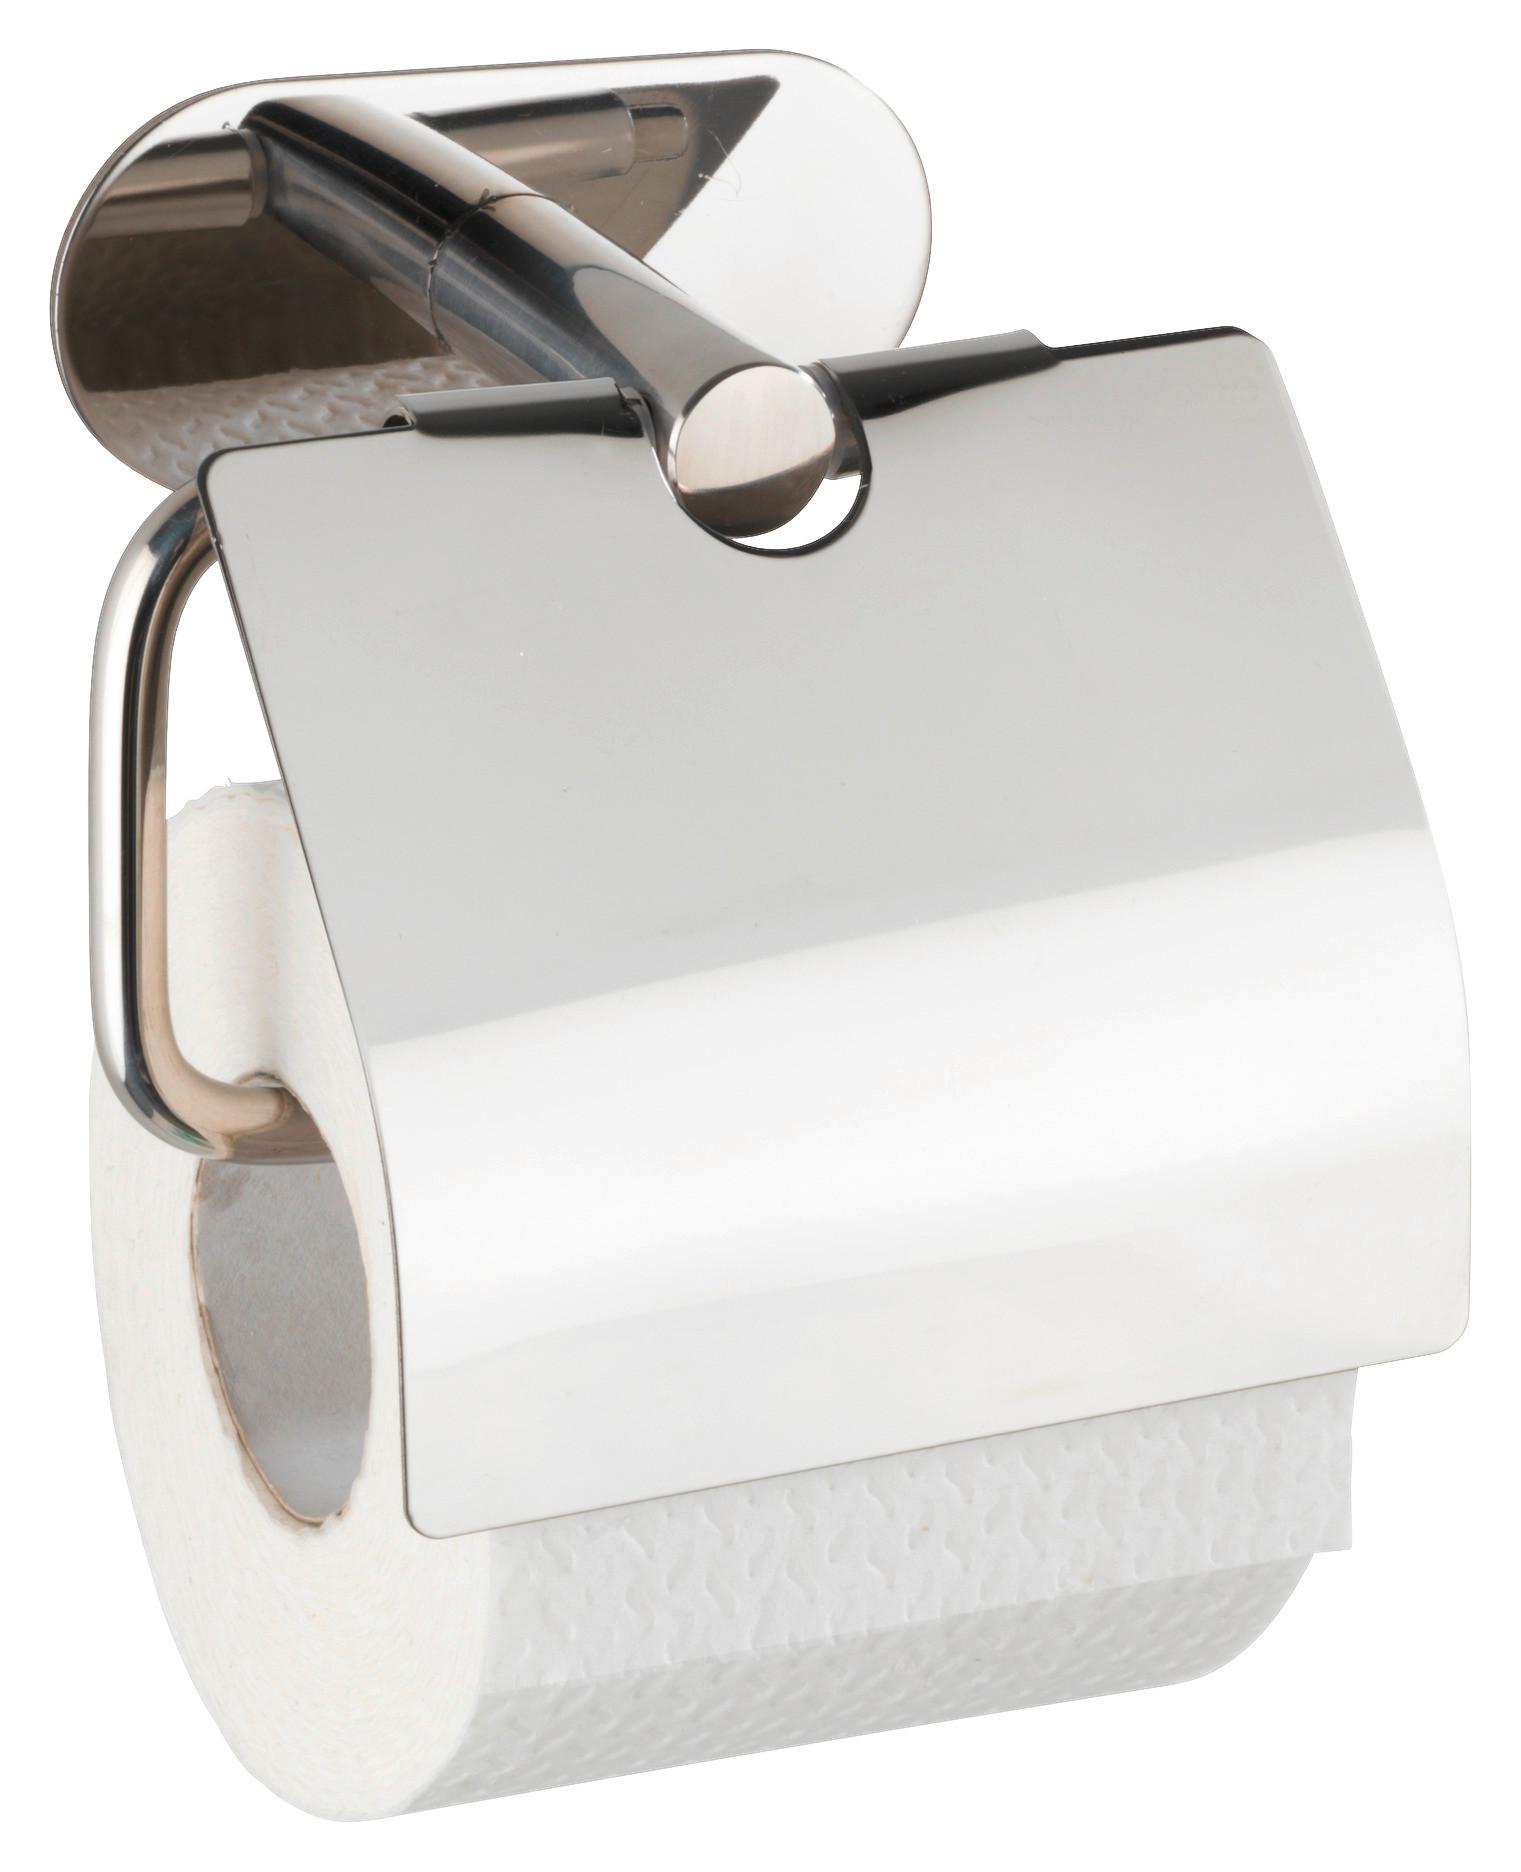 Toilettenpapierhalter in Chromfarben - Chromfarben, MODERN, Metall (14/12,5/7cm) - Modern Living